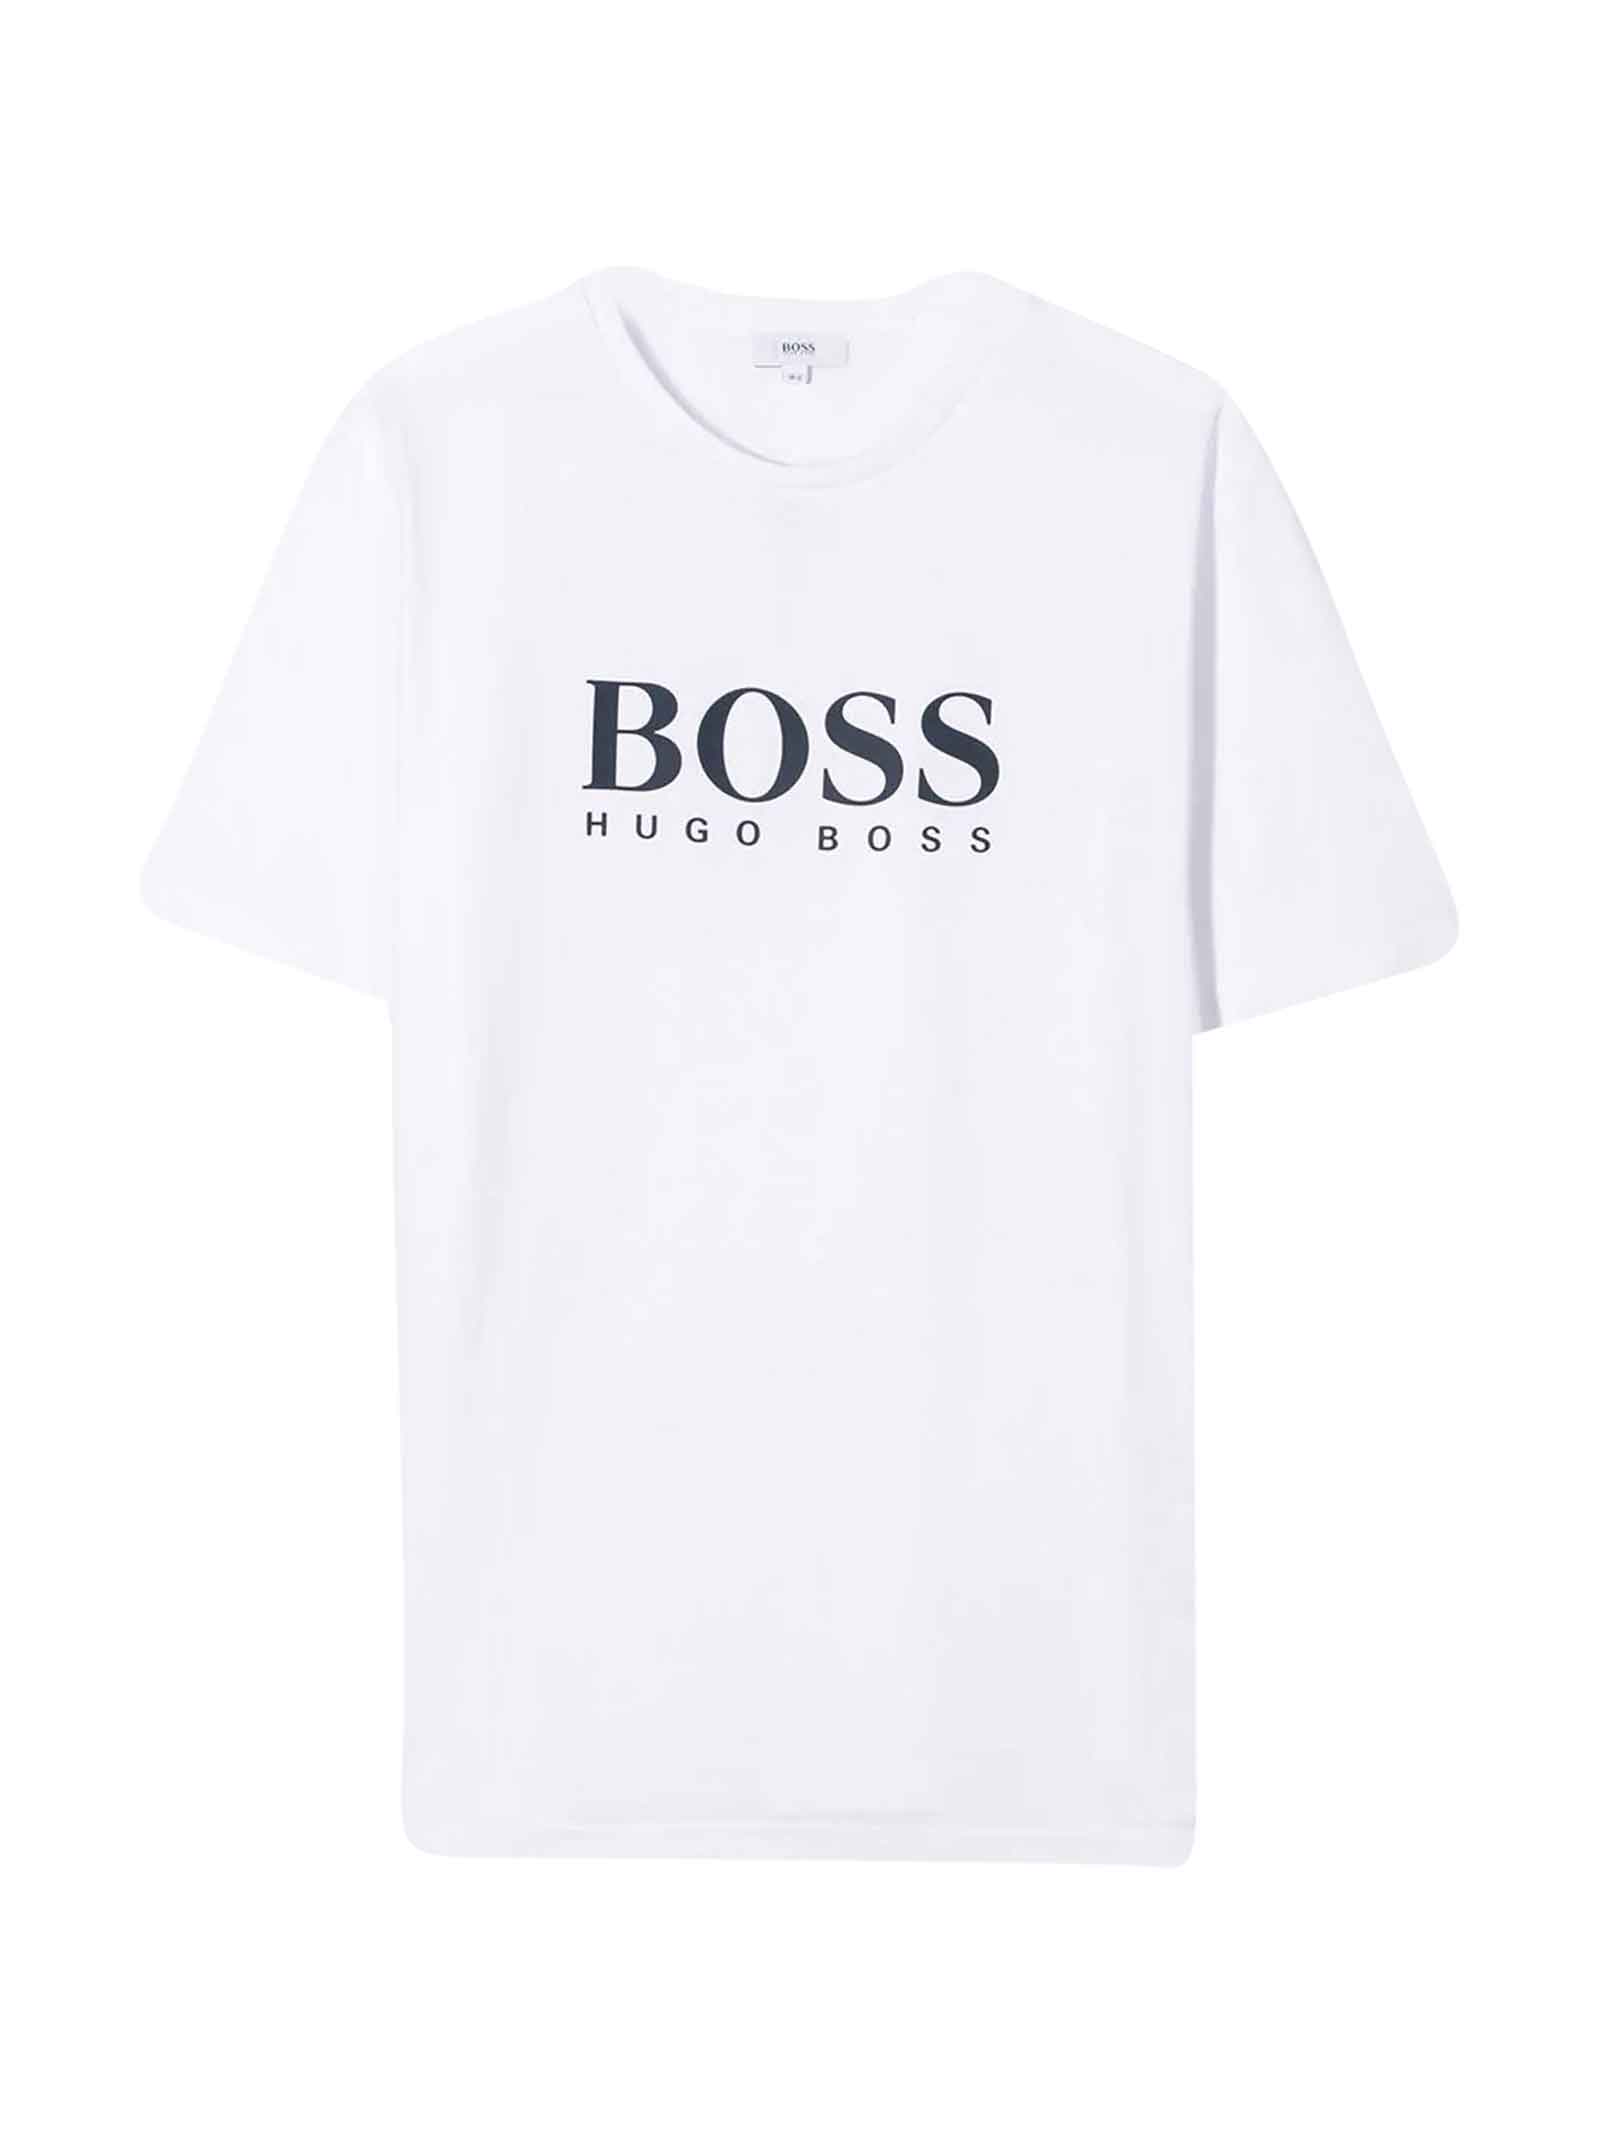 hugo boss tshirt sale